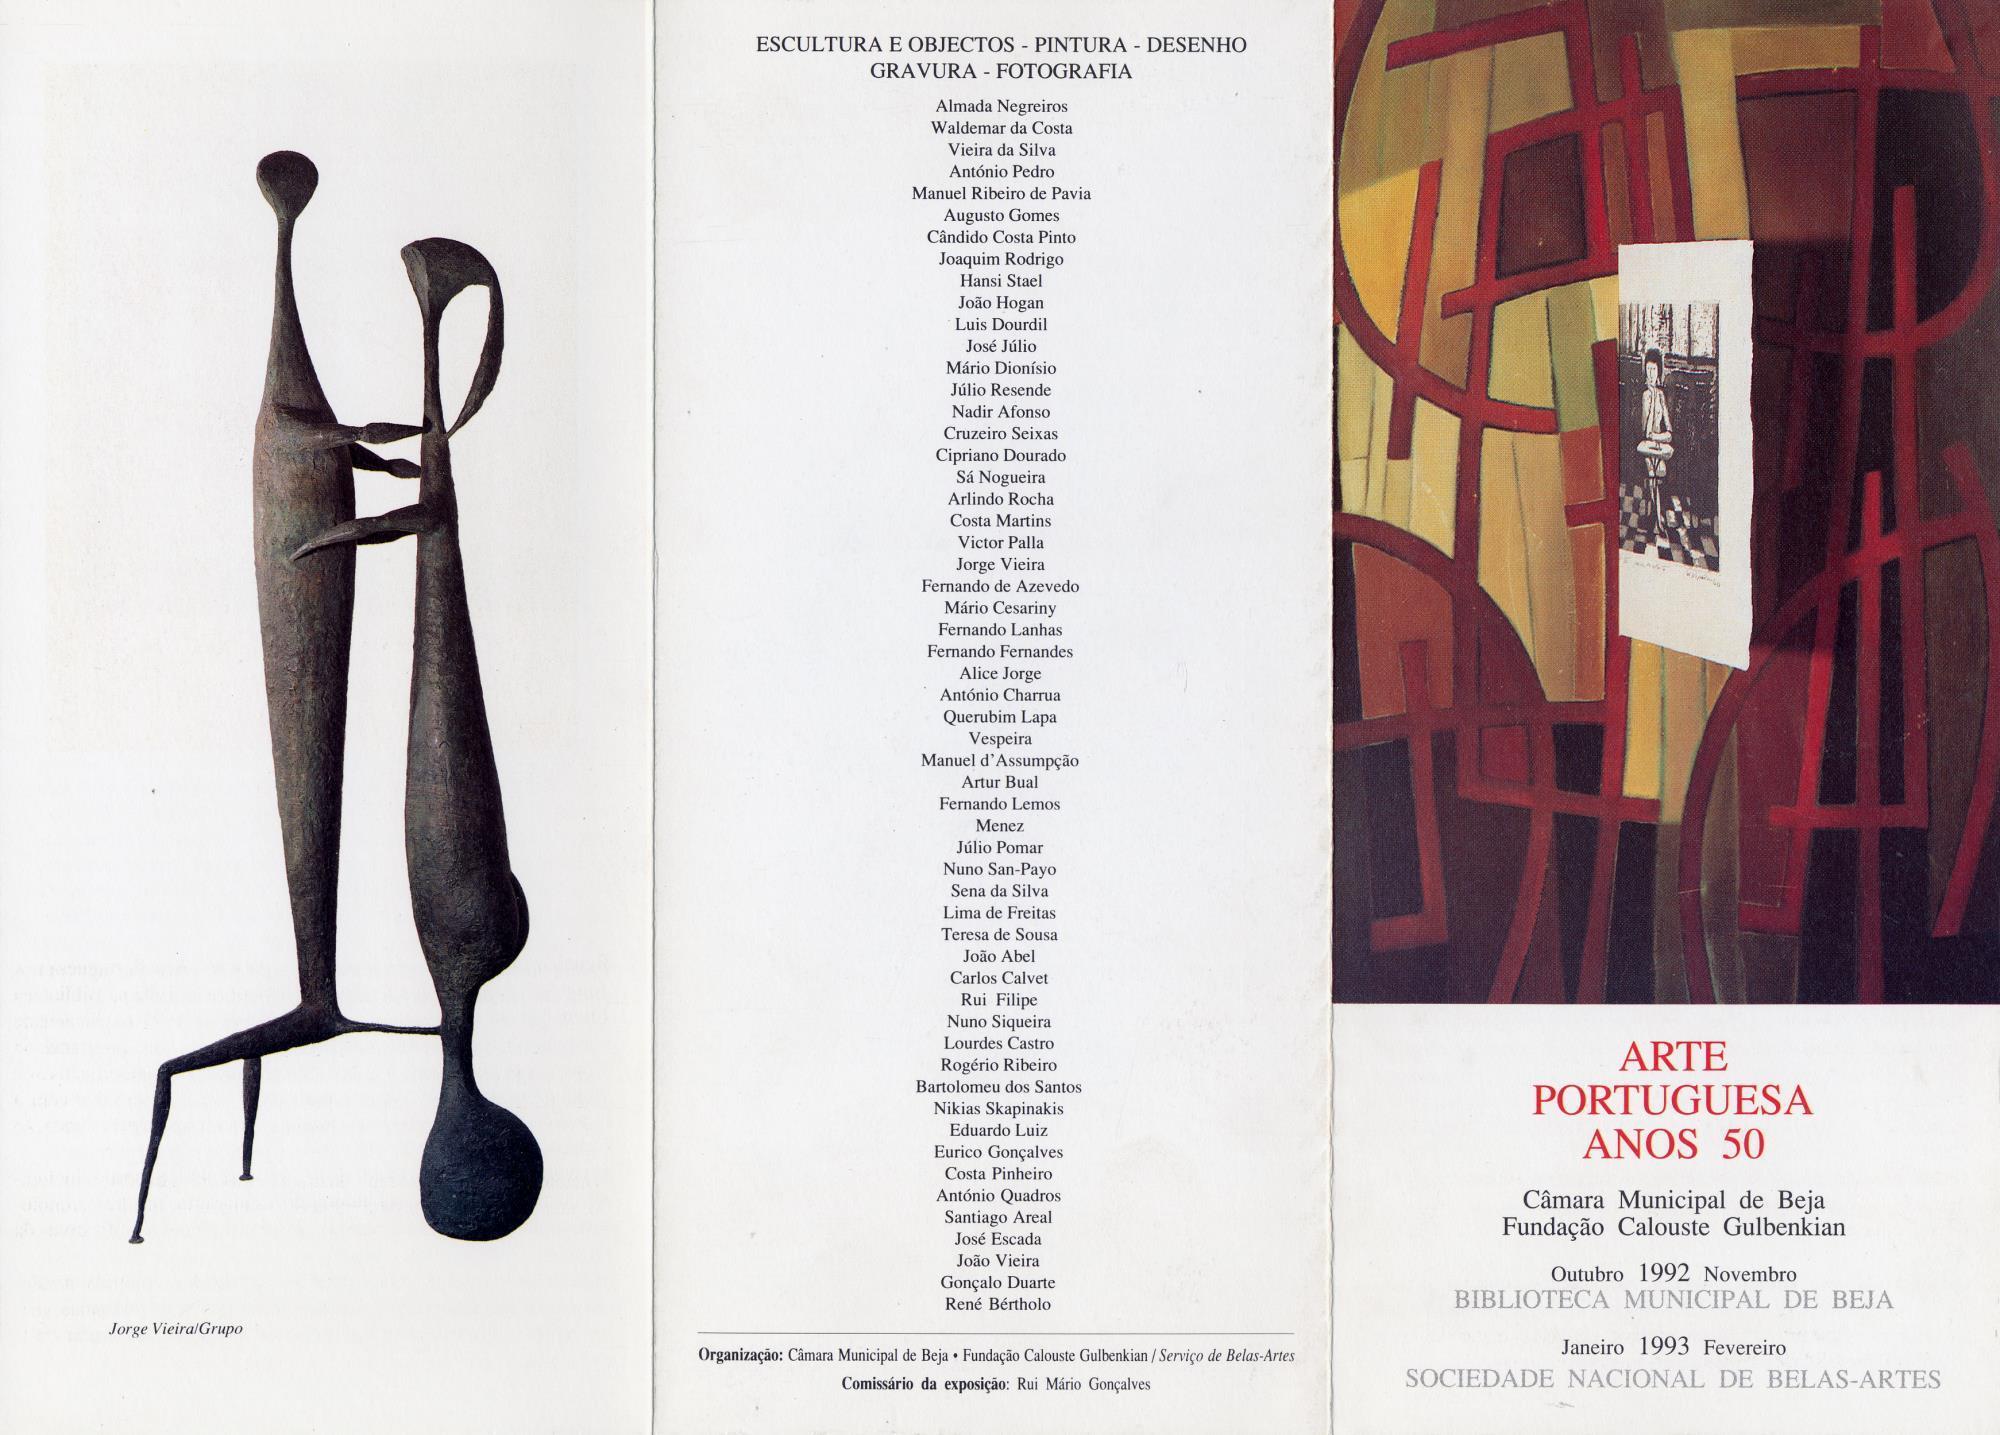 Arte Portuguesa nos Anos 50